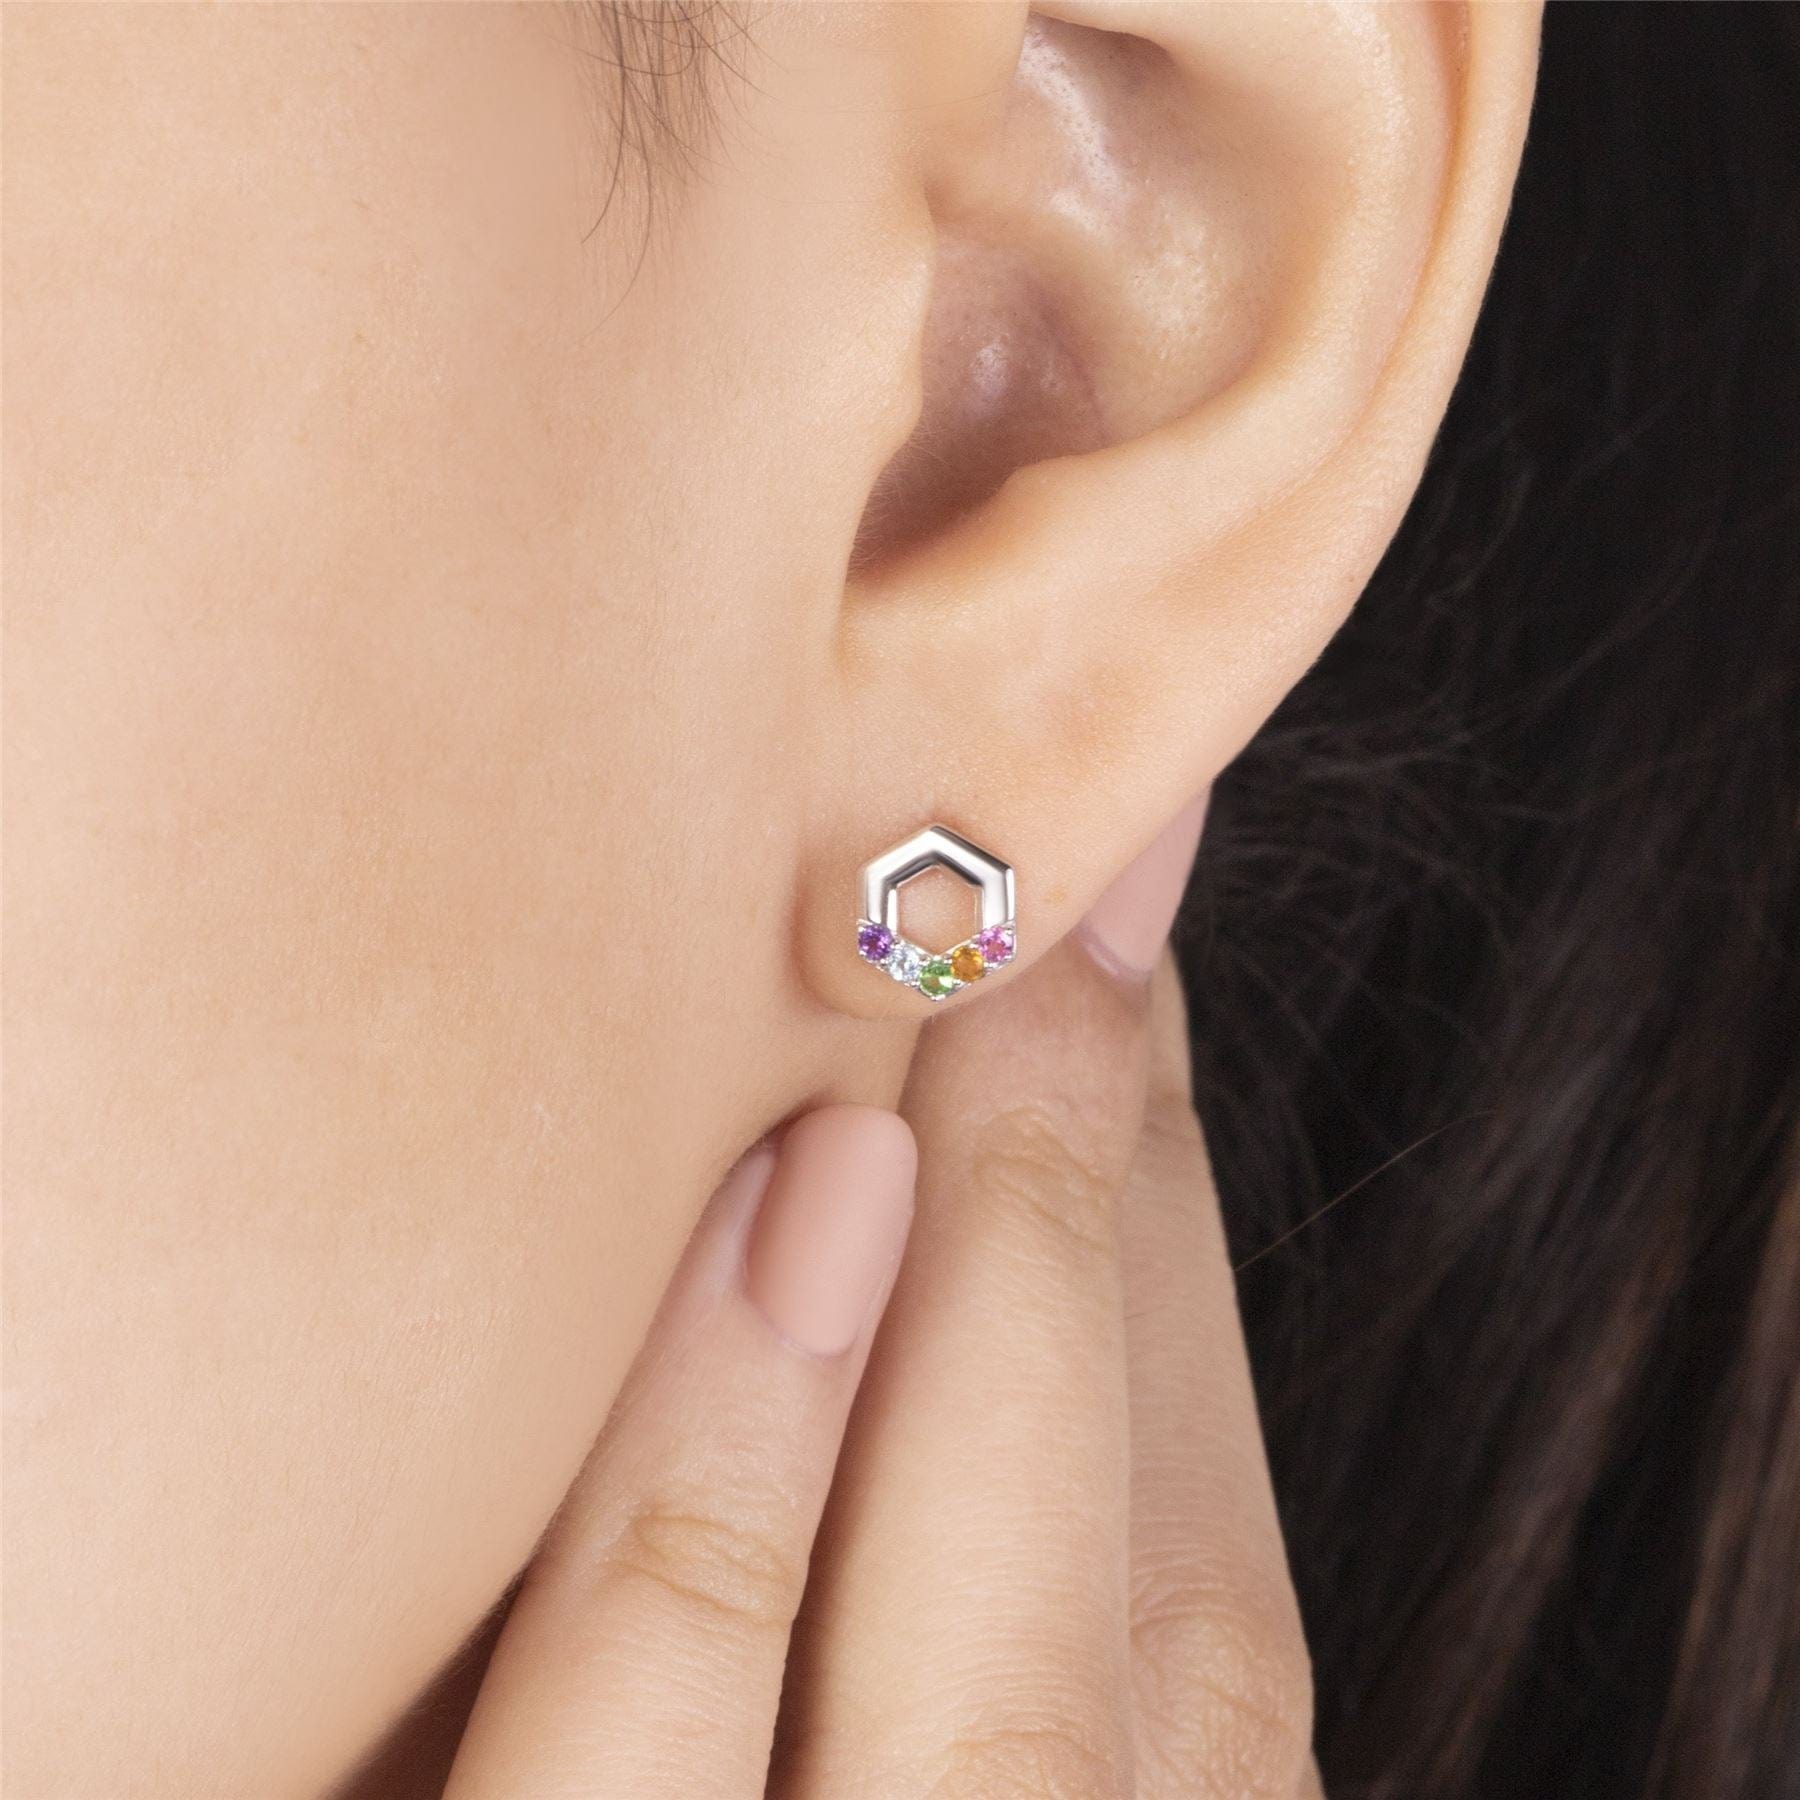 Rainbow Hexagon Stud Earrings in Sterling Silver on model